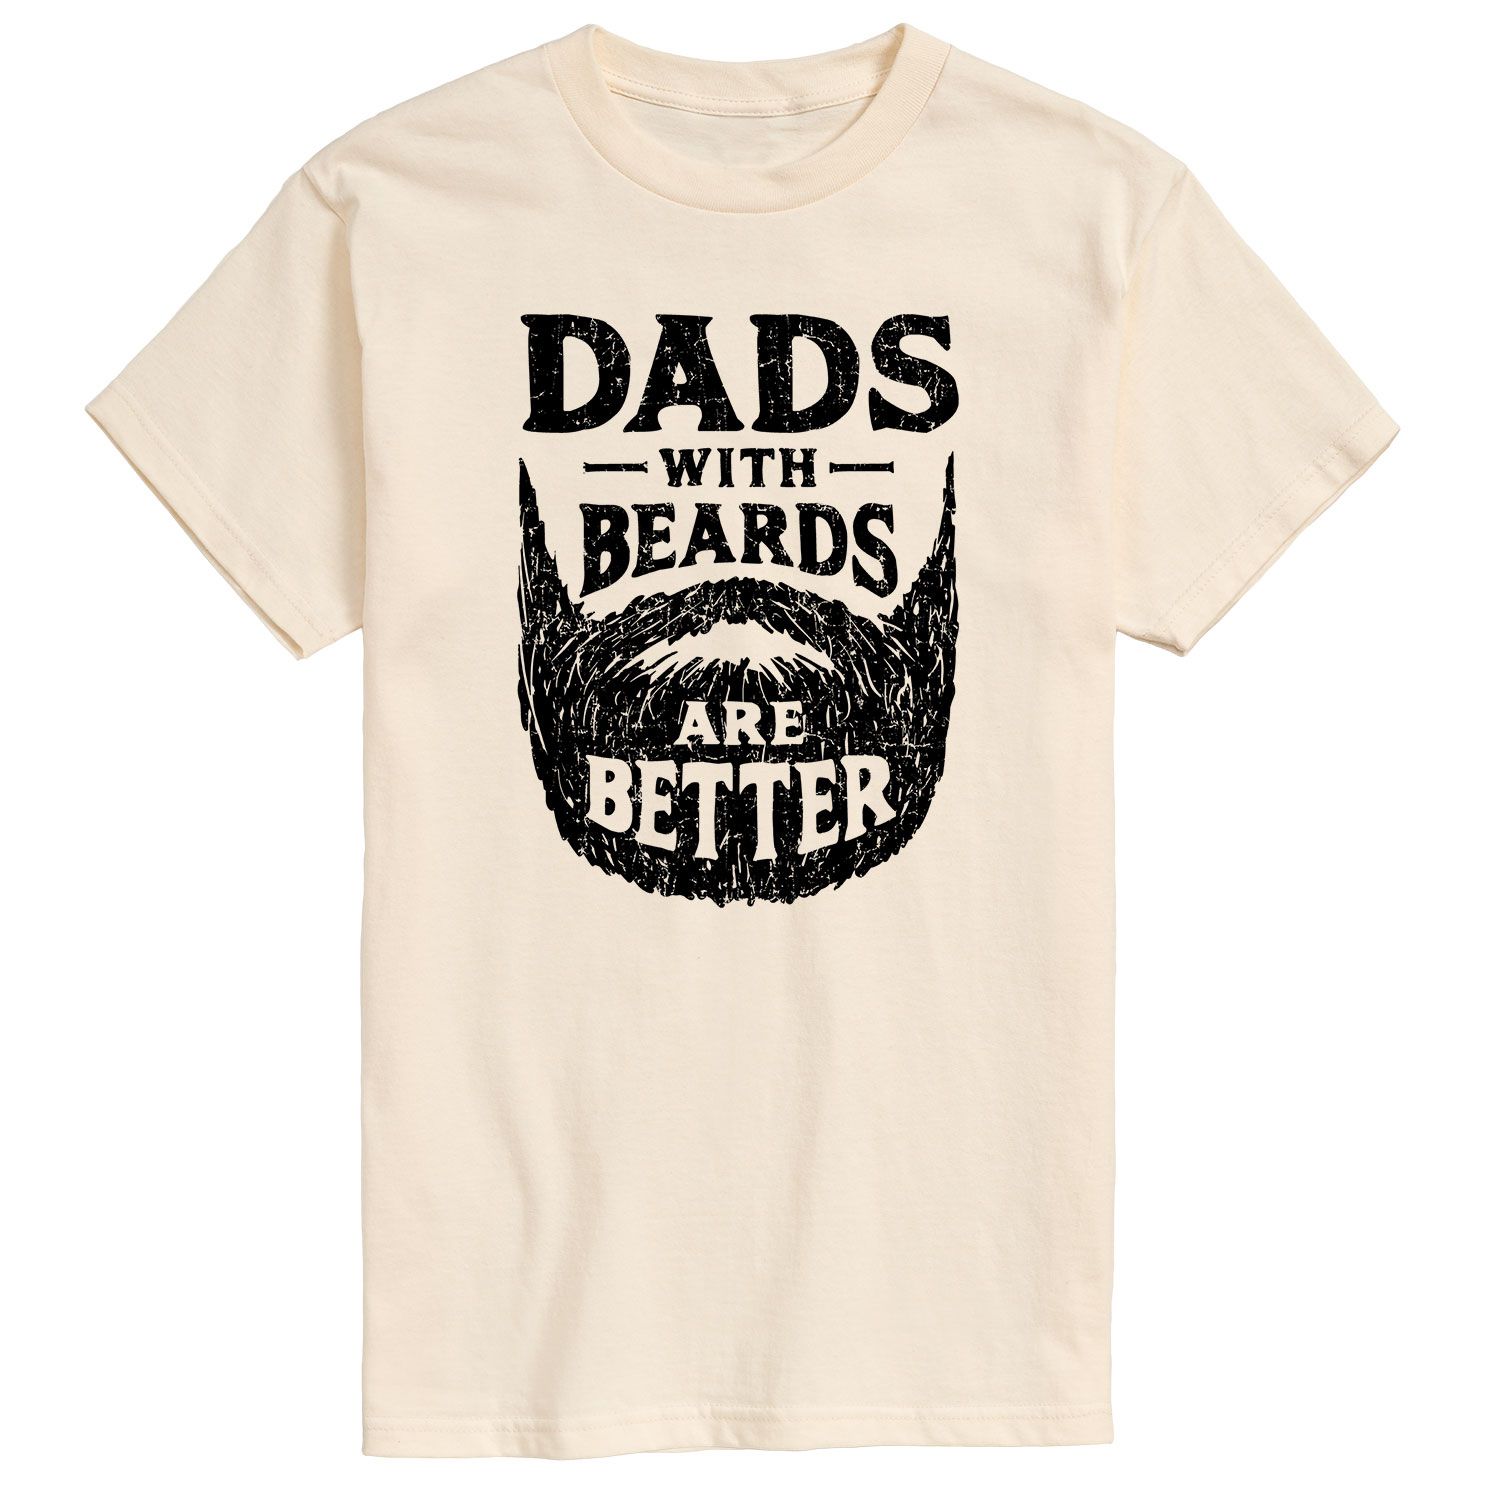 Мужская футболка «Папы с бородой» Better Licensed Character мужская футболка для папы game licensed character